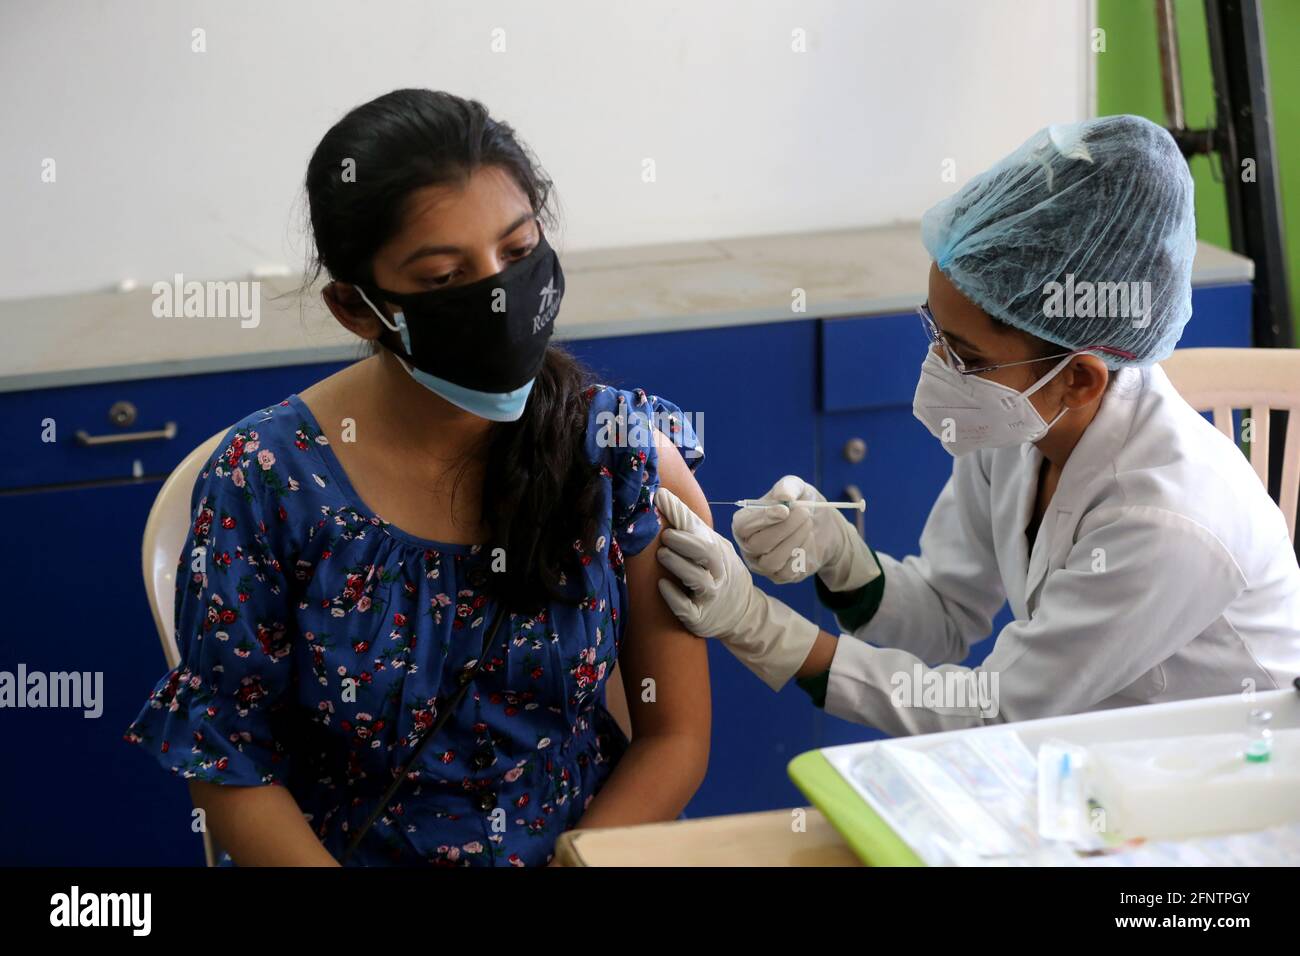 Bhopal, Indiens Bundesstaat Madhya Pradesh. Mai 2021. Eine Frau erhält während der Impfkampagne in Bhopal, der Hauptstadt des indischen Staates Madhya Pradesh, am 19. Mai 2021 einen Schuss COVID-19-Impfstoff. Indiens COVID-19-Quote erreichte am Mittwoch 25,496,330, wobei in den letzten 24 Stunden 267,334 neue Fälle registriert wurden, bestätigte das Gesundheitsministerium. Seit dem Beginn einer landesweiten Impfkampagne am 16. Januar wurden den Menschen im ganzen Land bisher über 185 Millionen Impfdosen (185,809,302) verabreicht. Quelle: Str/Xinhua/Alamy Live News Stockfoto